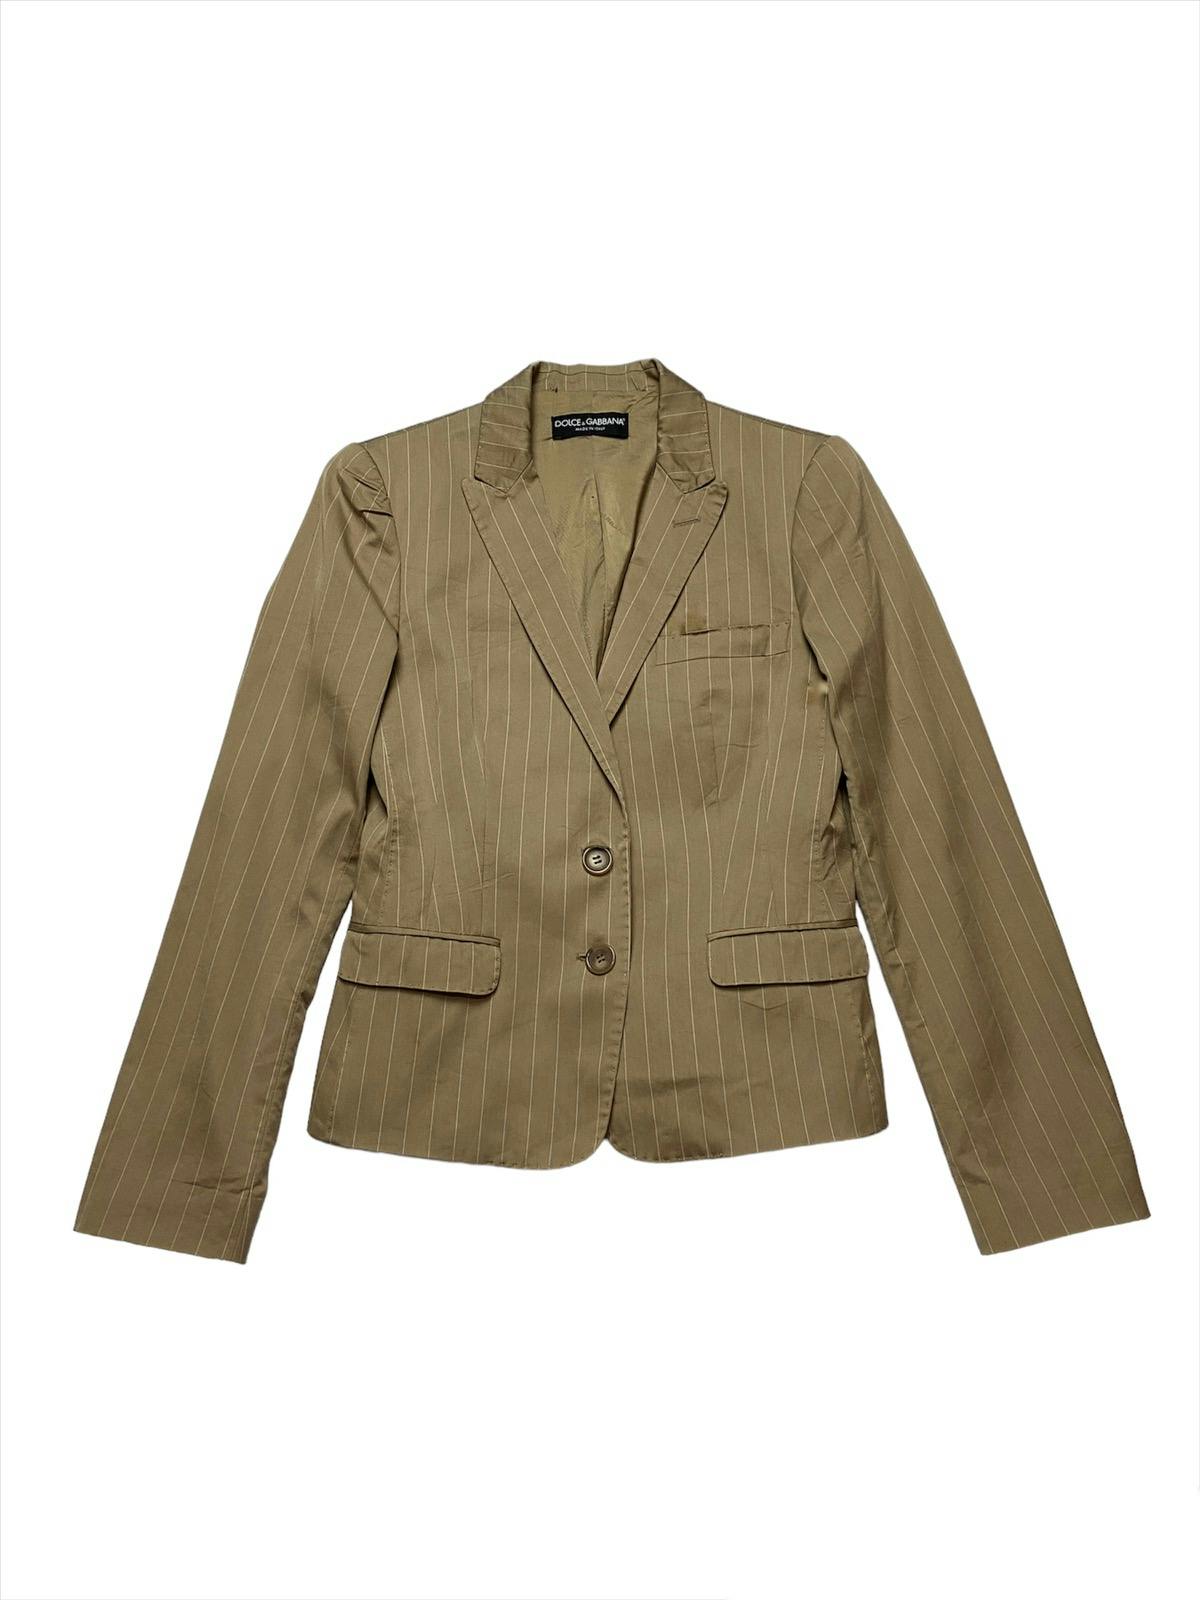 Rare D&G Dolce Gabbana Croptop Style Blazer Jacket - 1